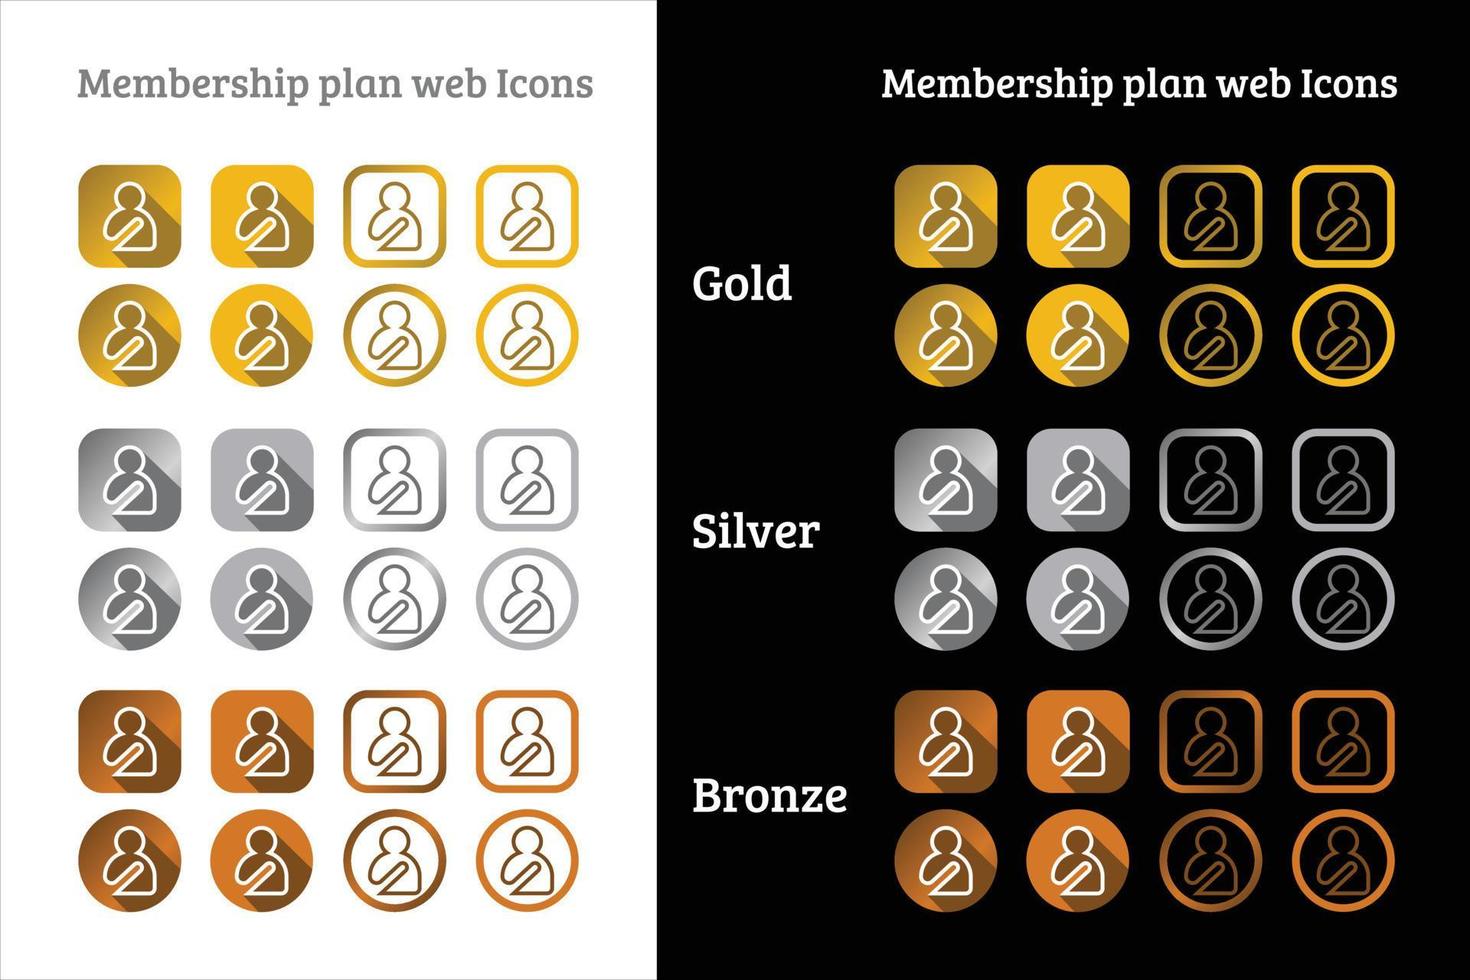 conception d'icônes web de plan d'adhésion en couleur or, argent et bronze vecteur